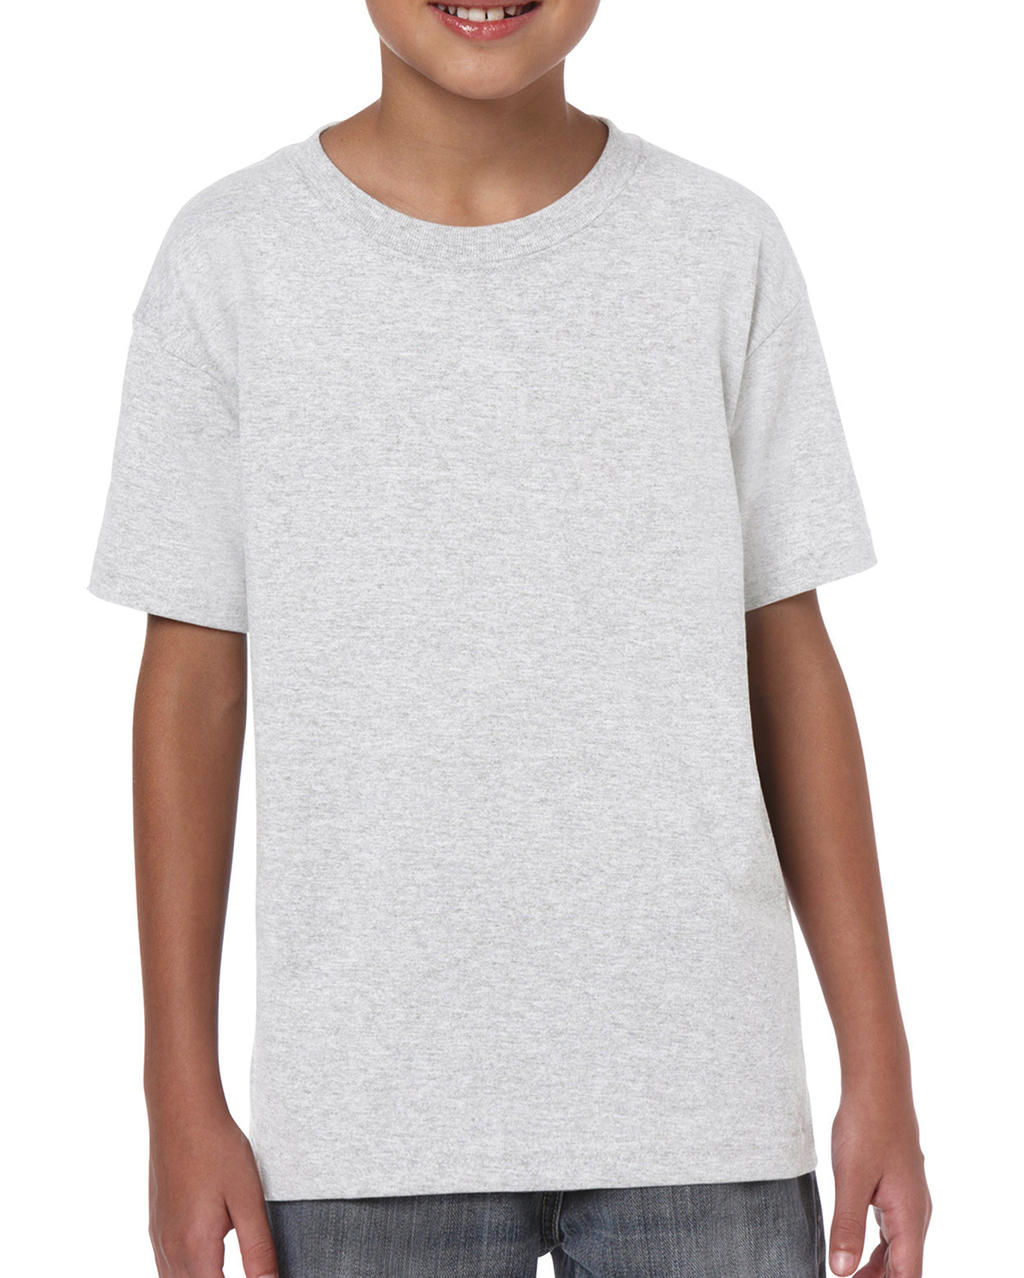 Detské tričko Heavy Cotton Youth - ash grey